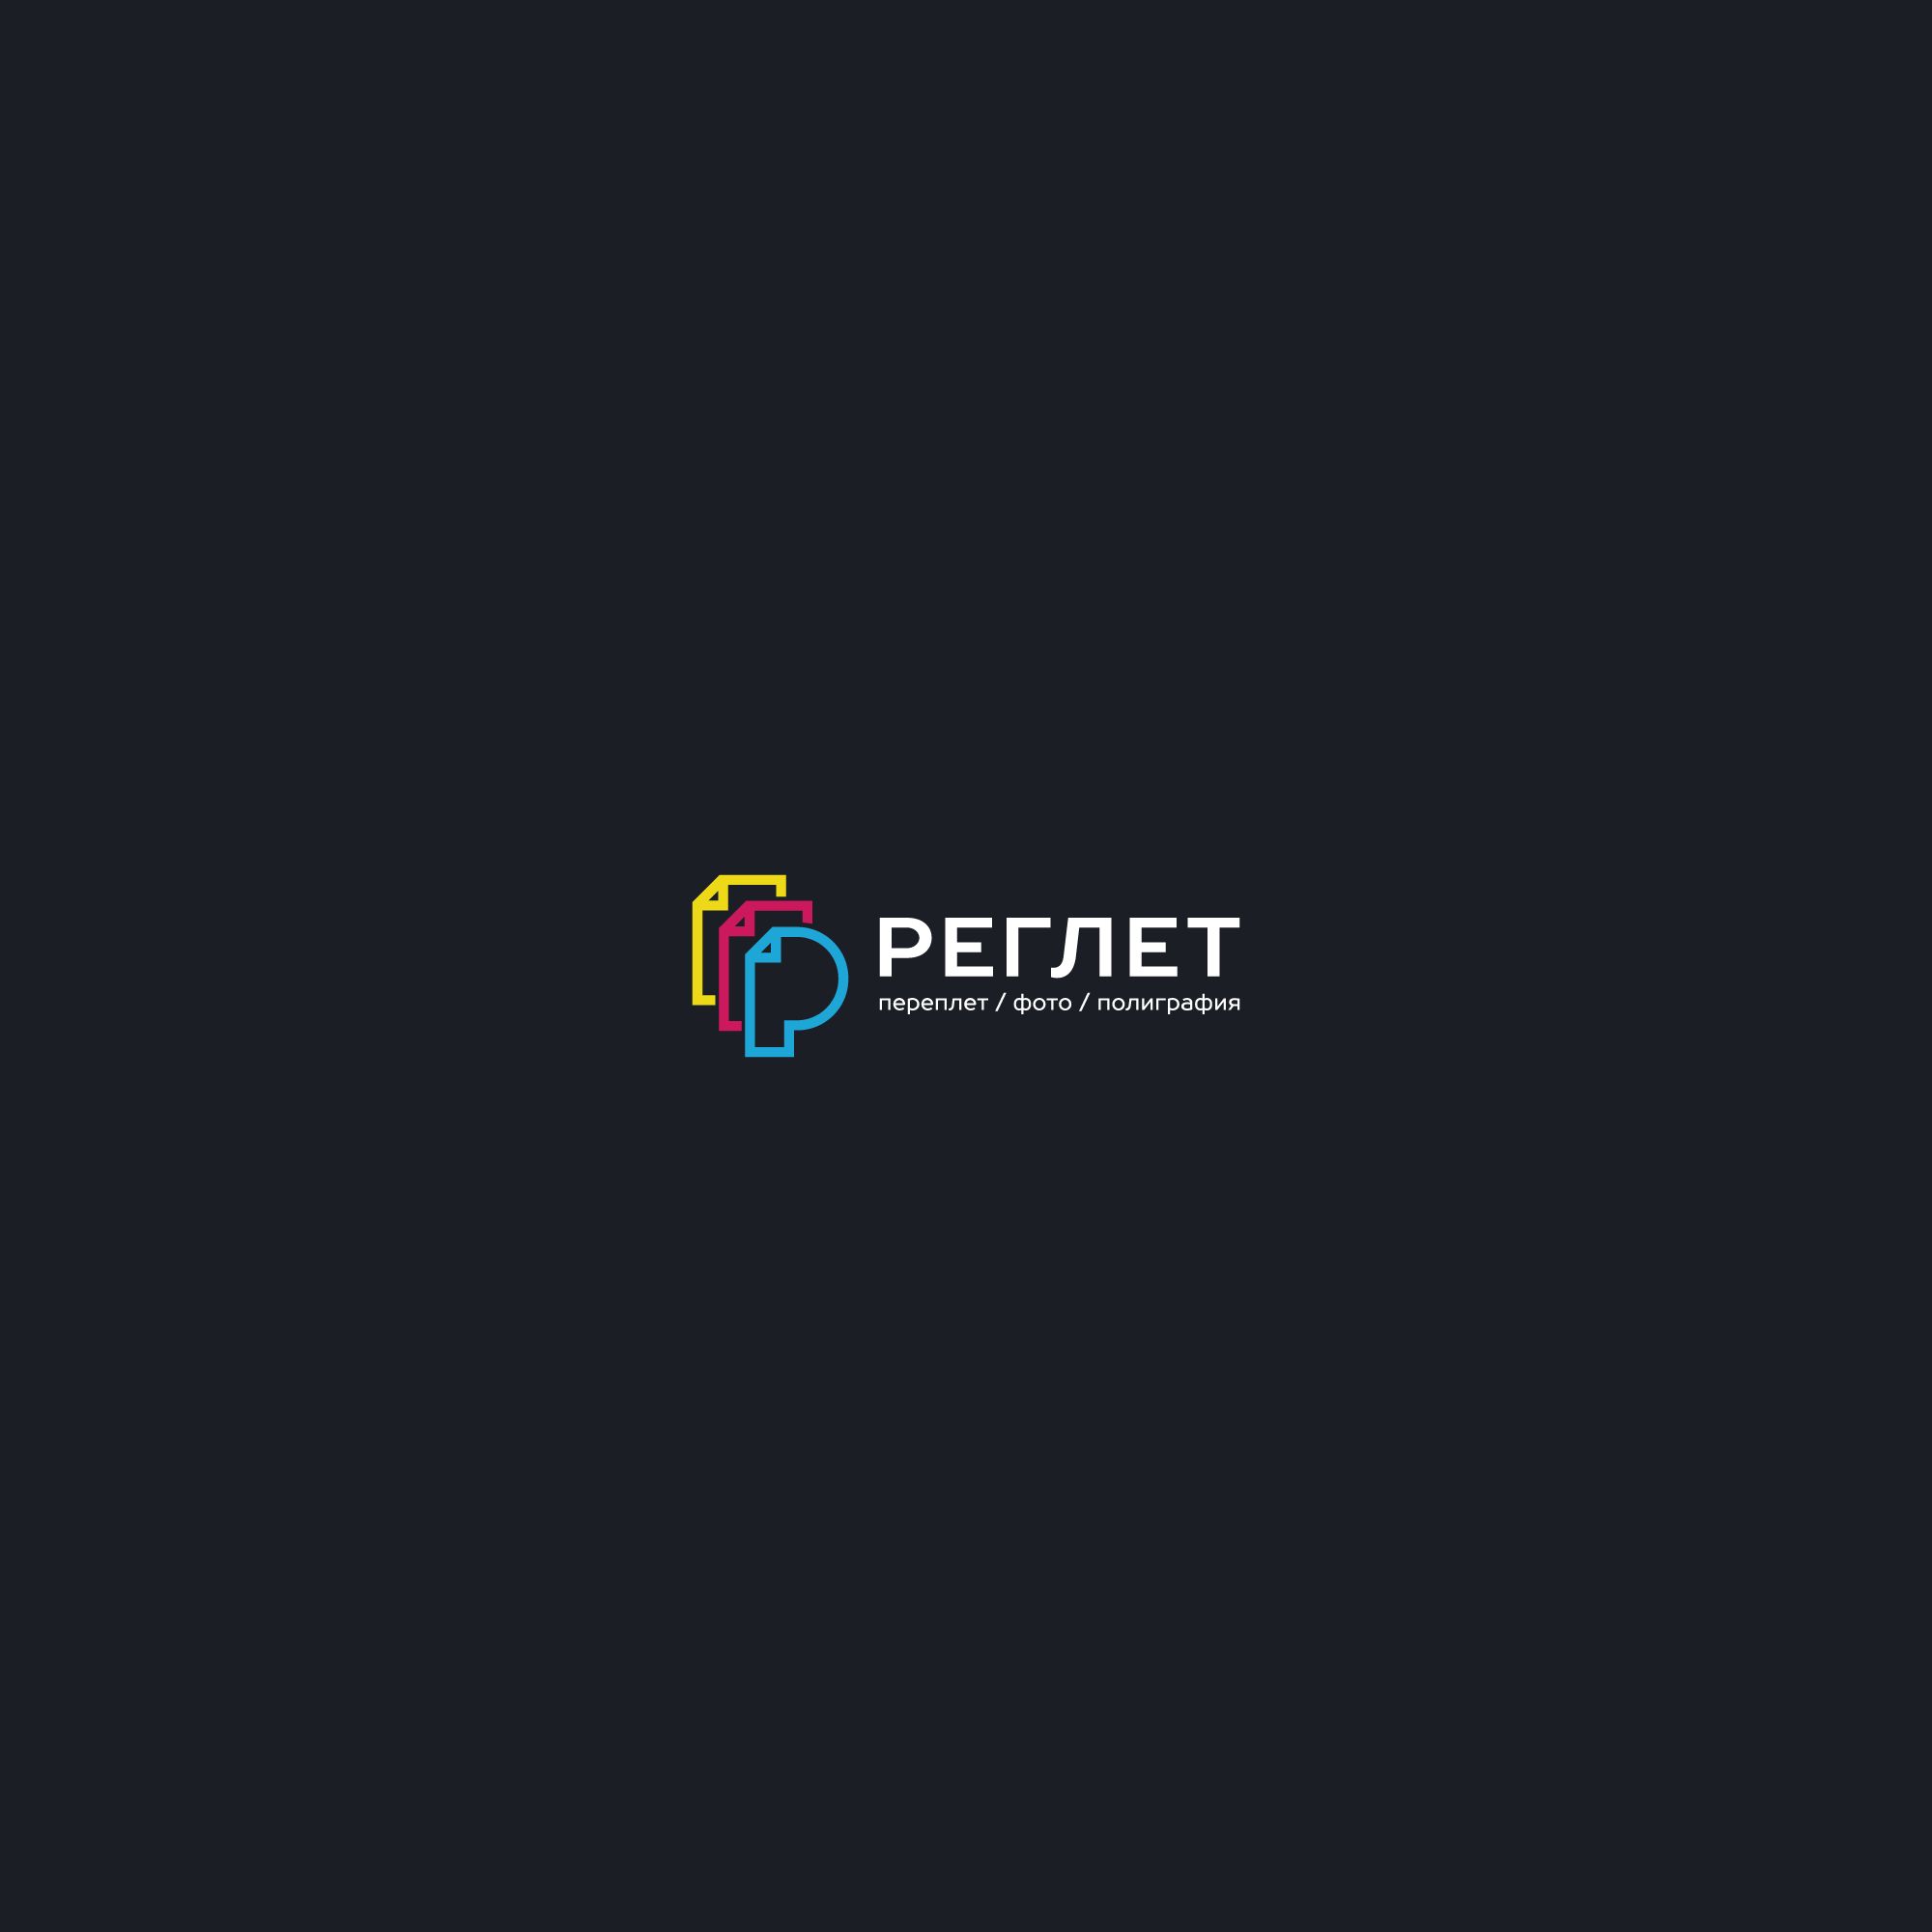 Лого и фирменный стиль для Реглет (сеть копировальных центров) - дизайнер nuttale